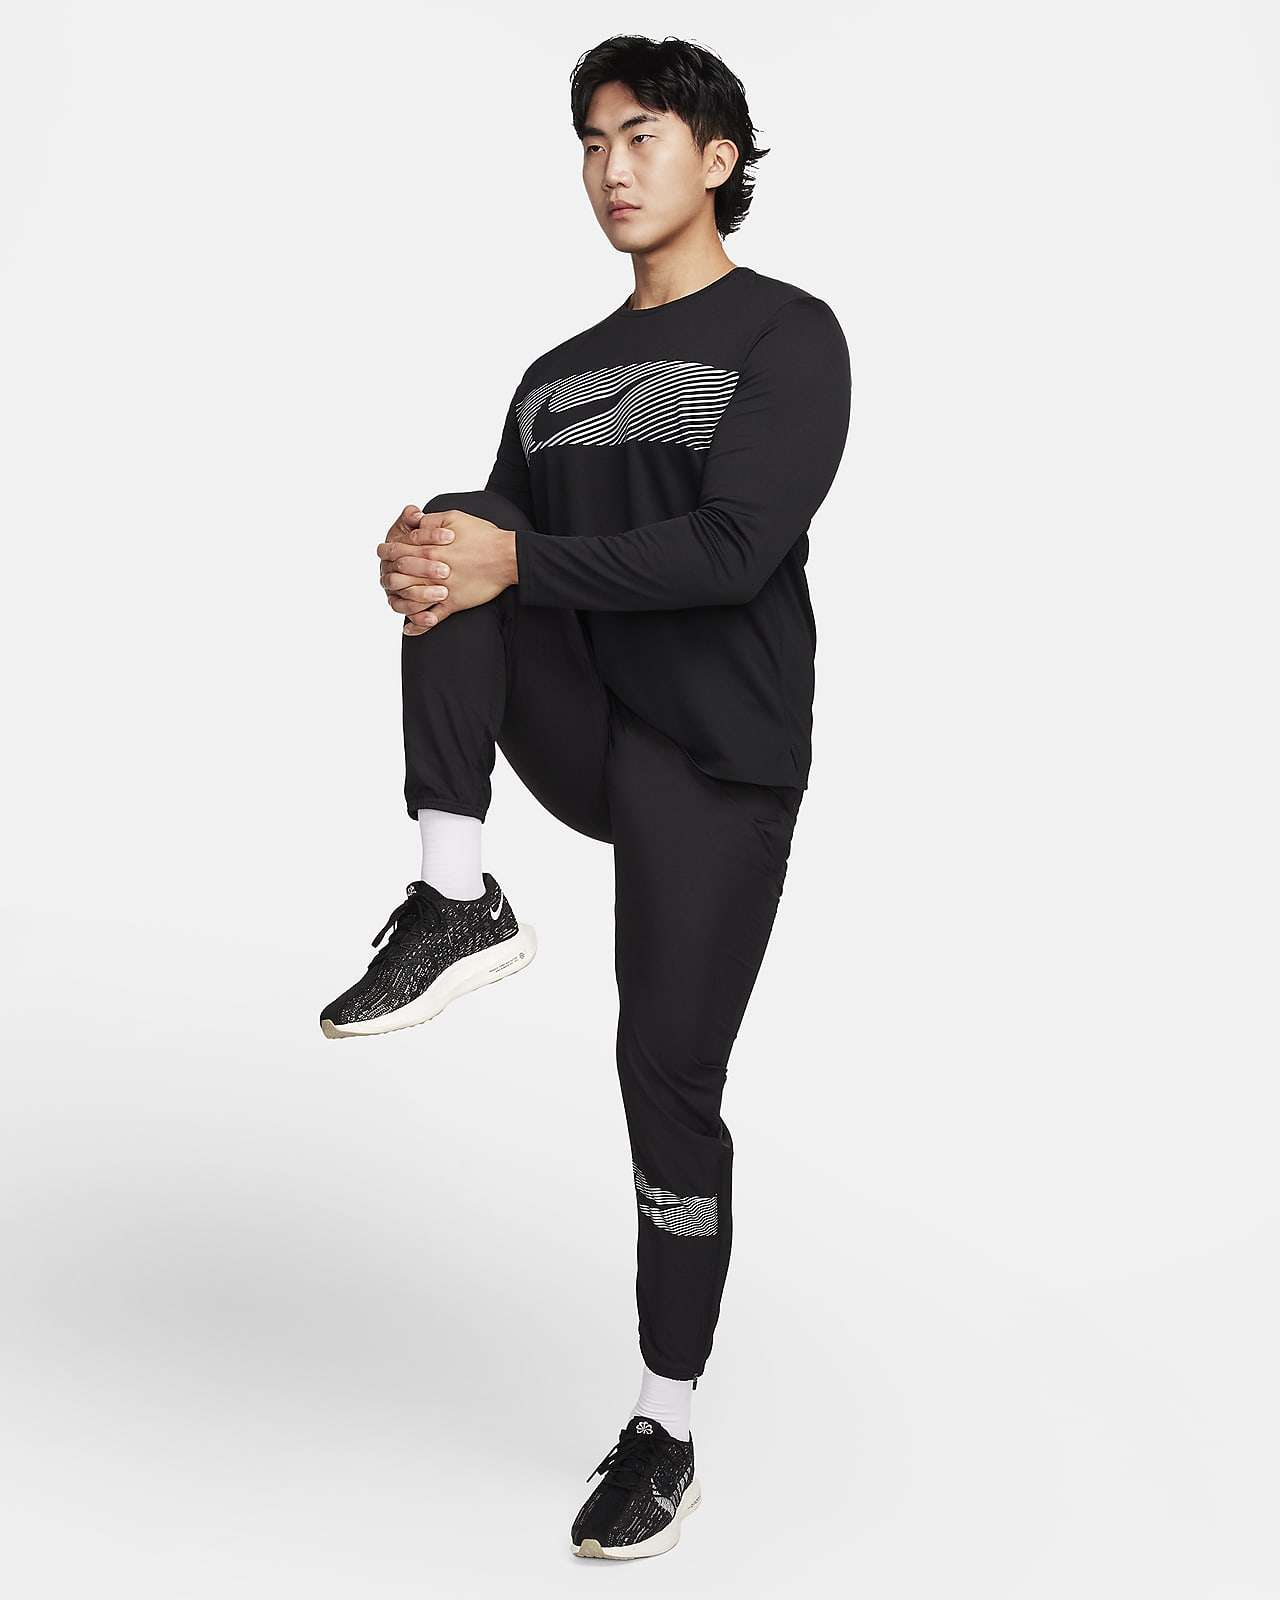 Pantalon de running en maille Nike Dri-FIT Challenger pour Homme